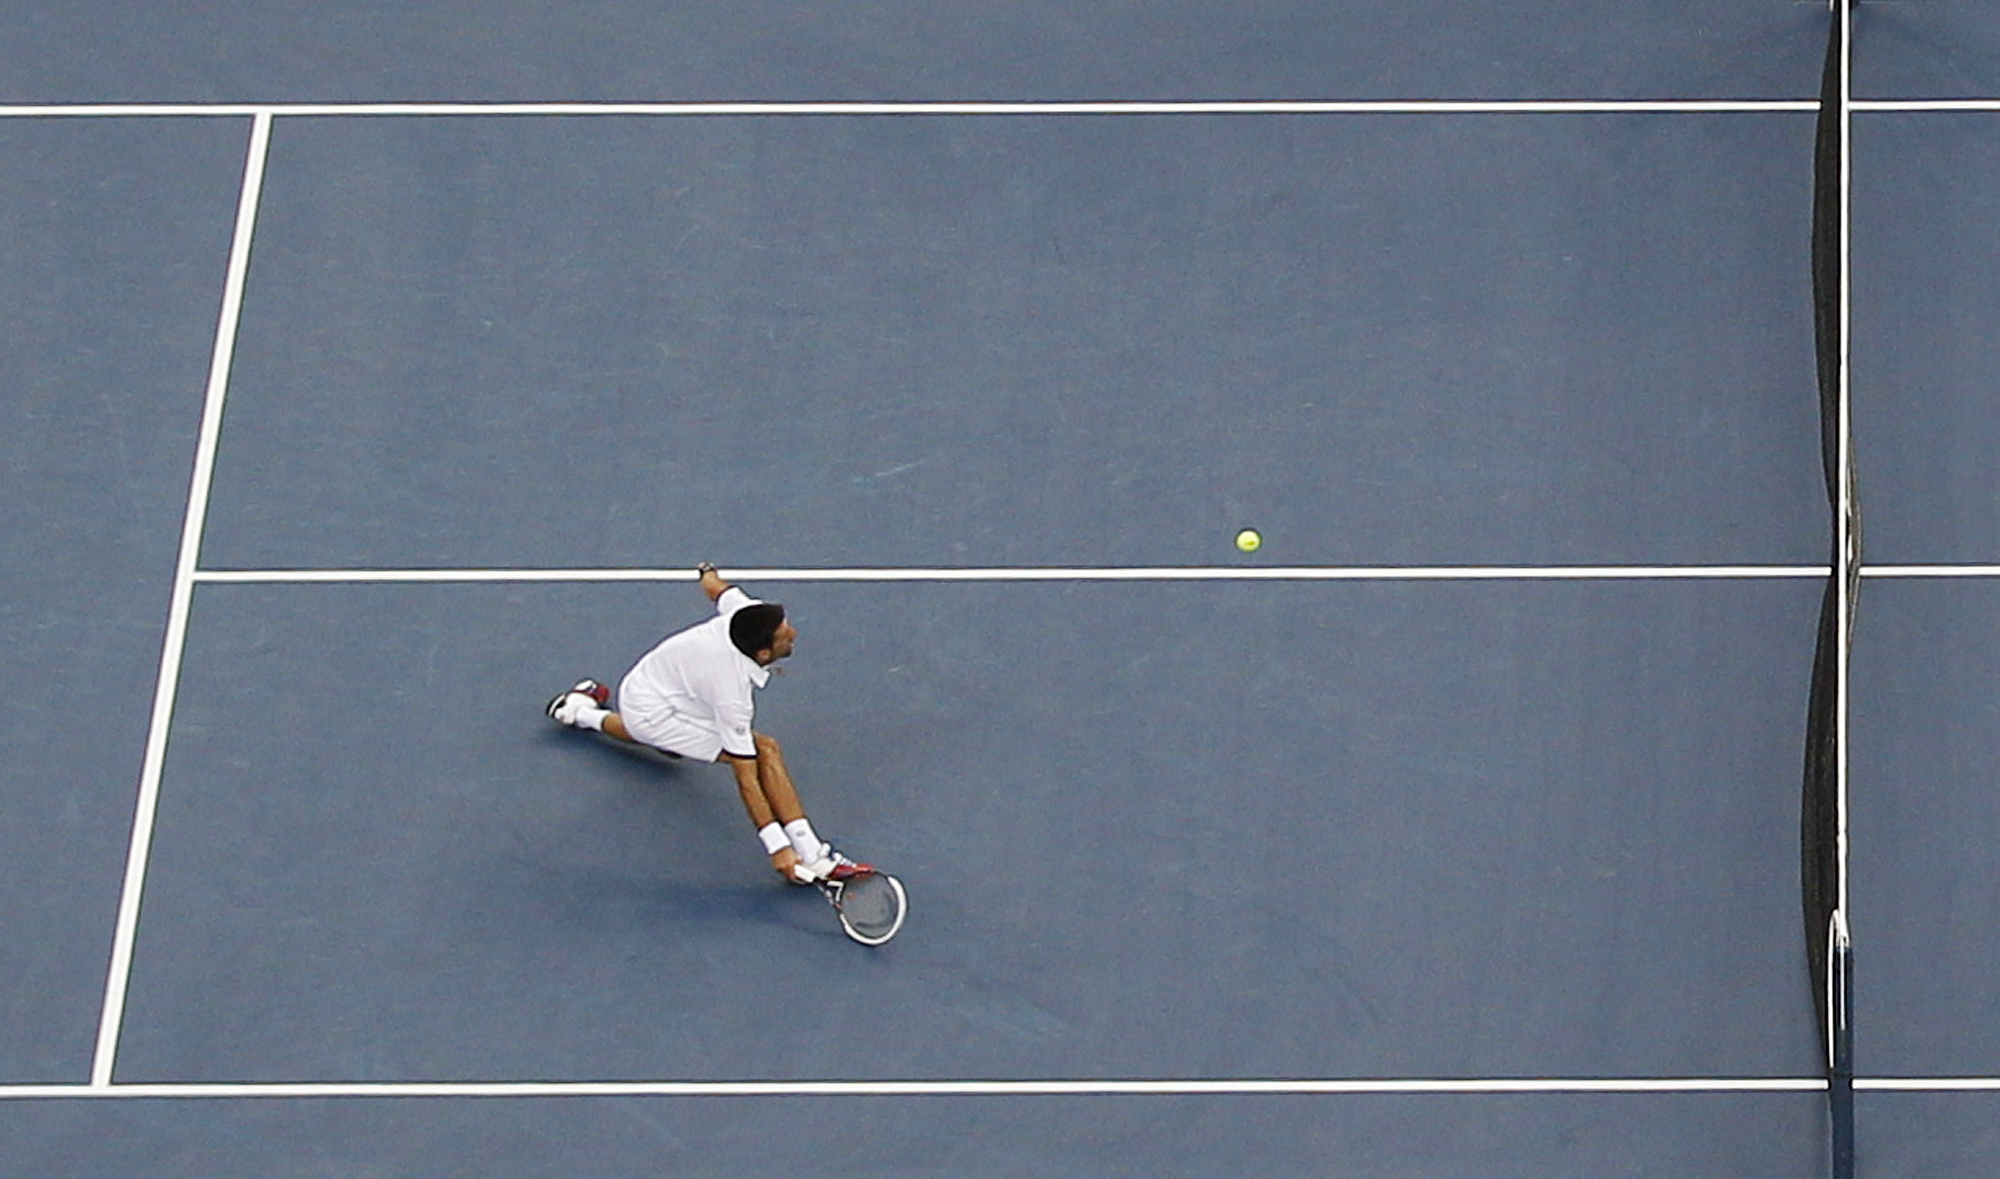 US Open, Novak Djokovic, Rafael Nadal, Tennis, Roger Federer